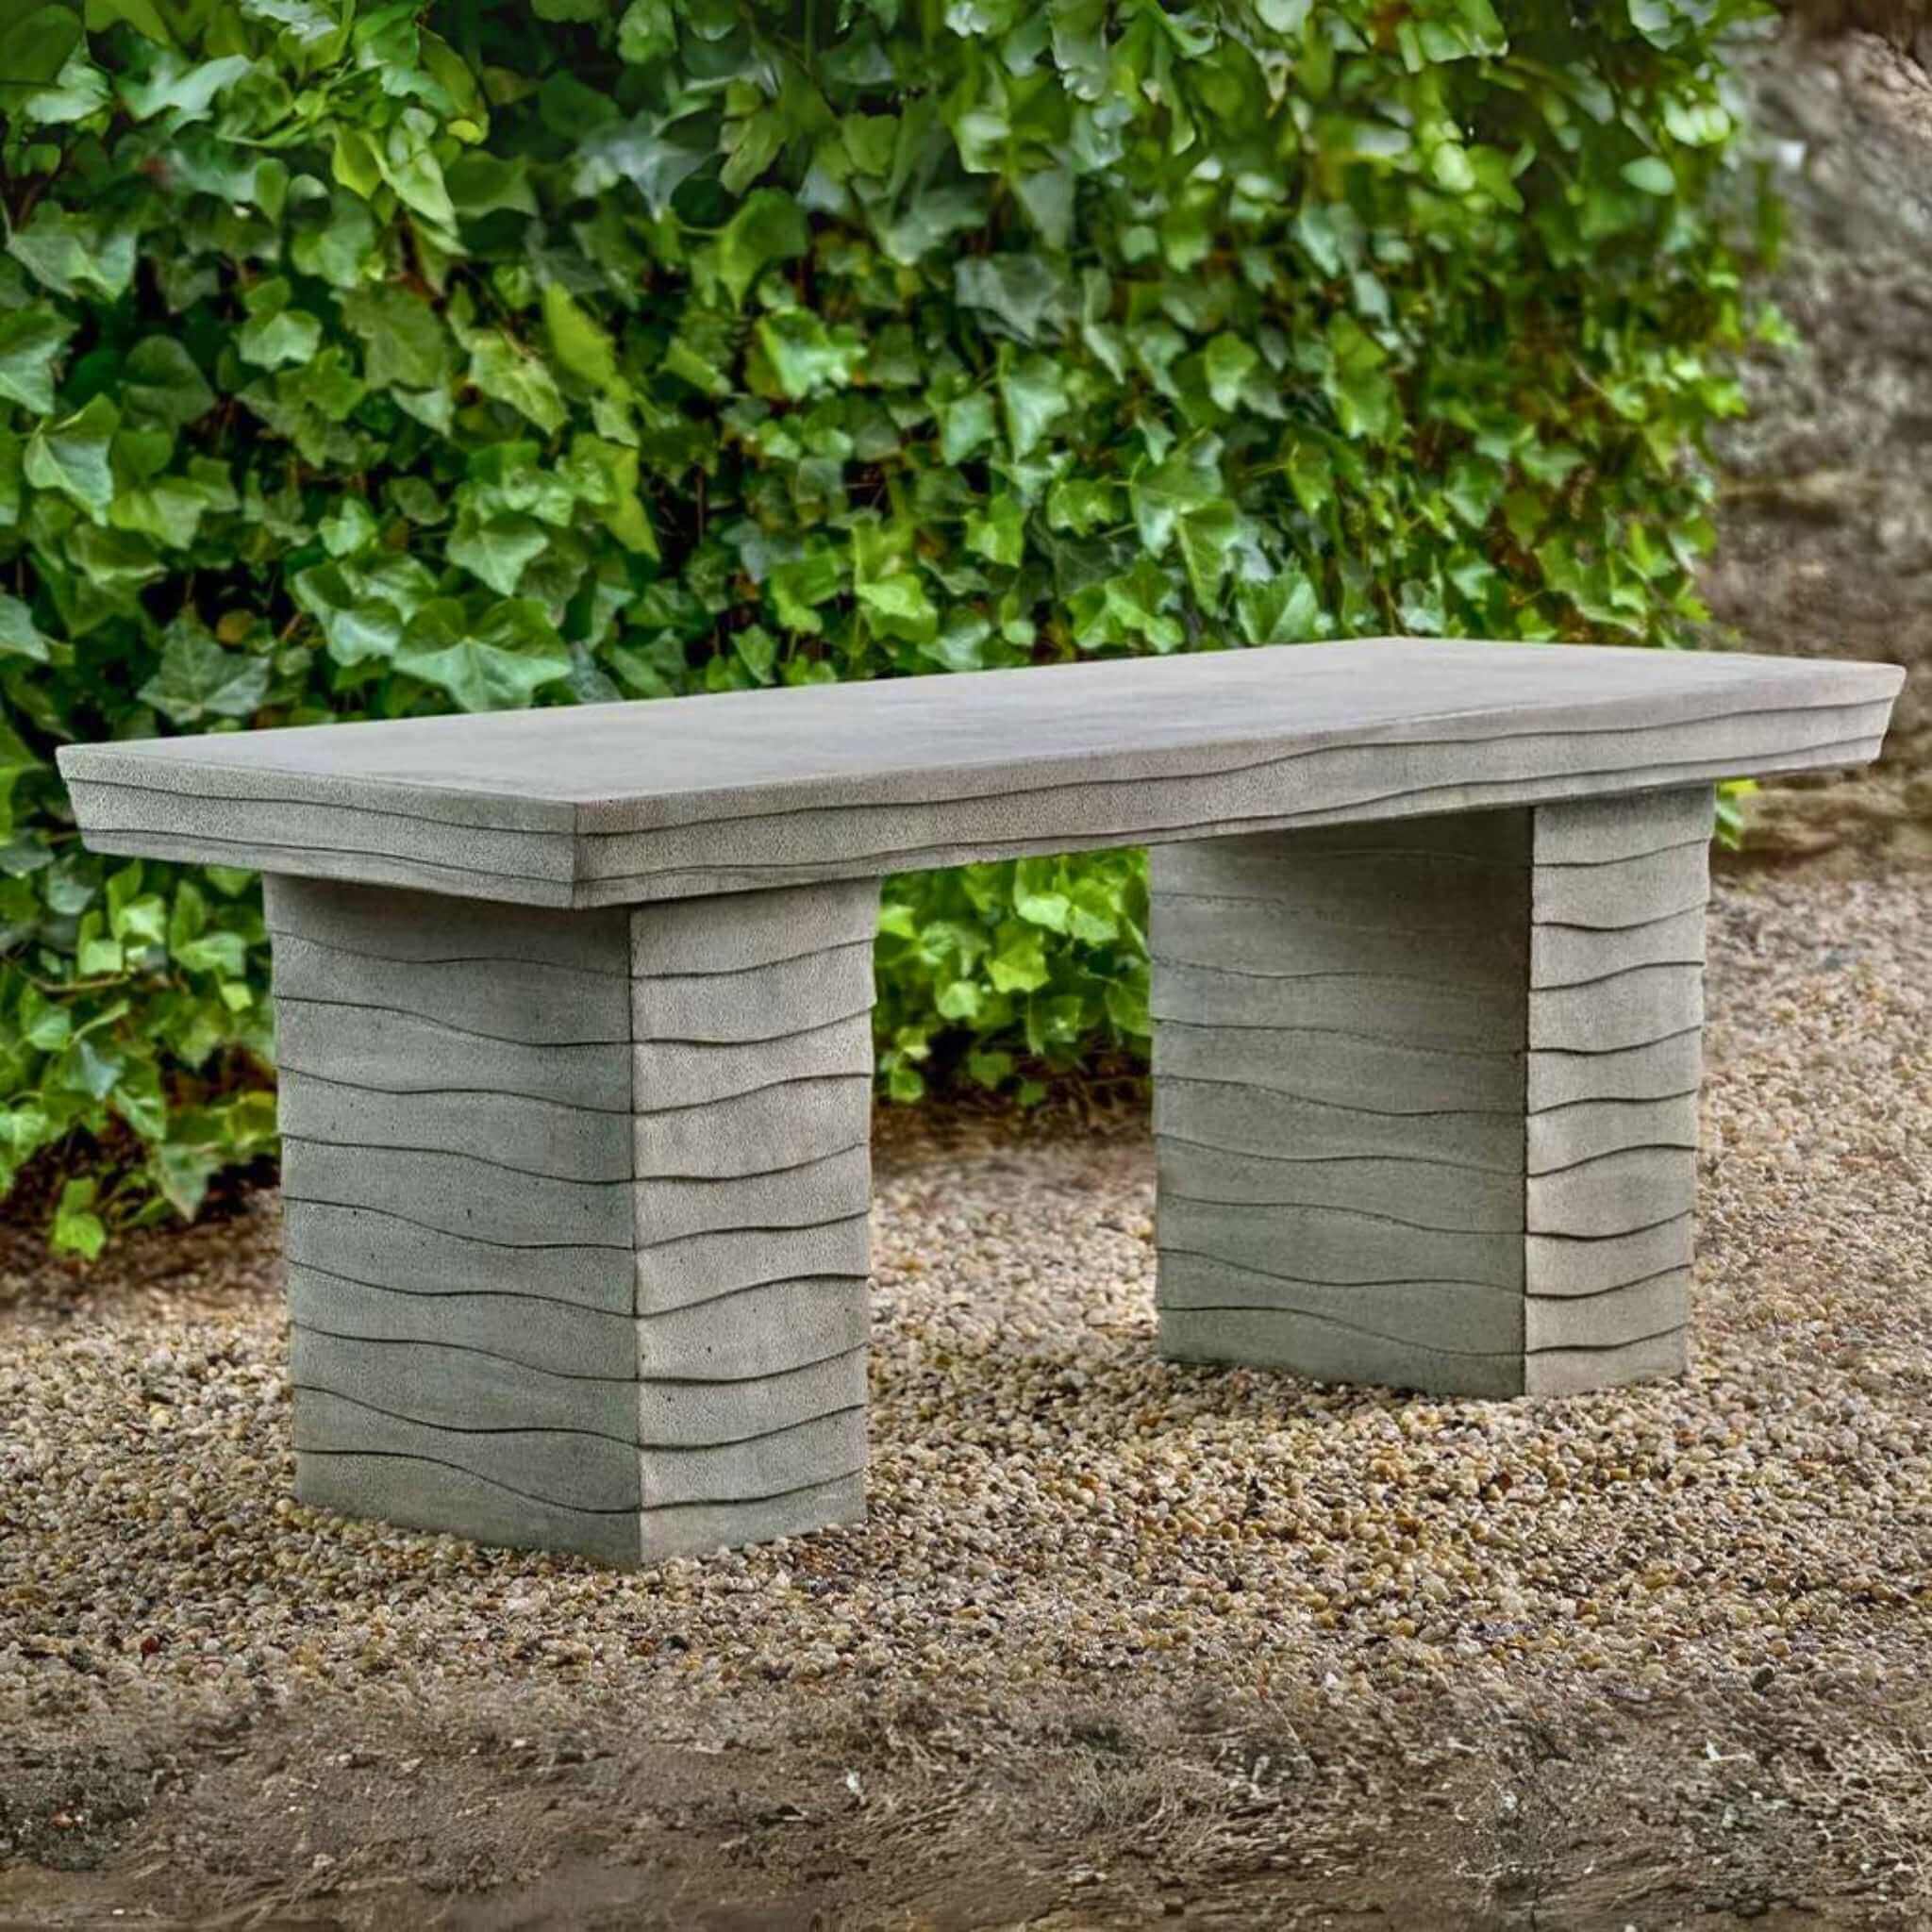  Ipanema Concrete Garden Bench - Campania #BE148